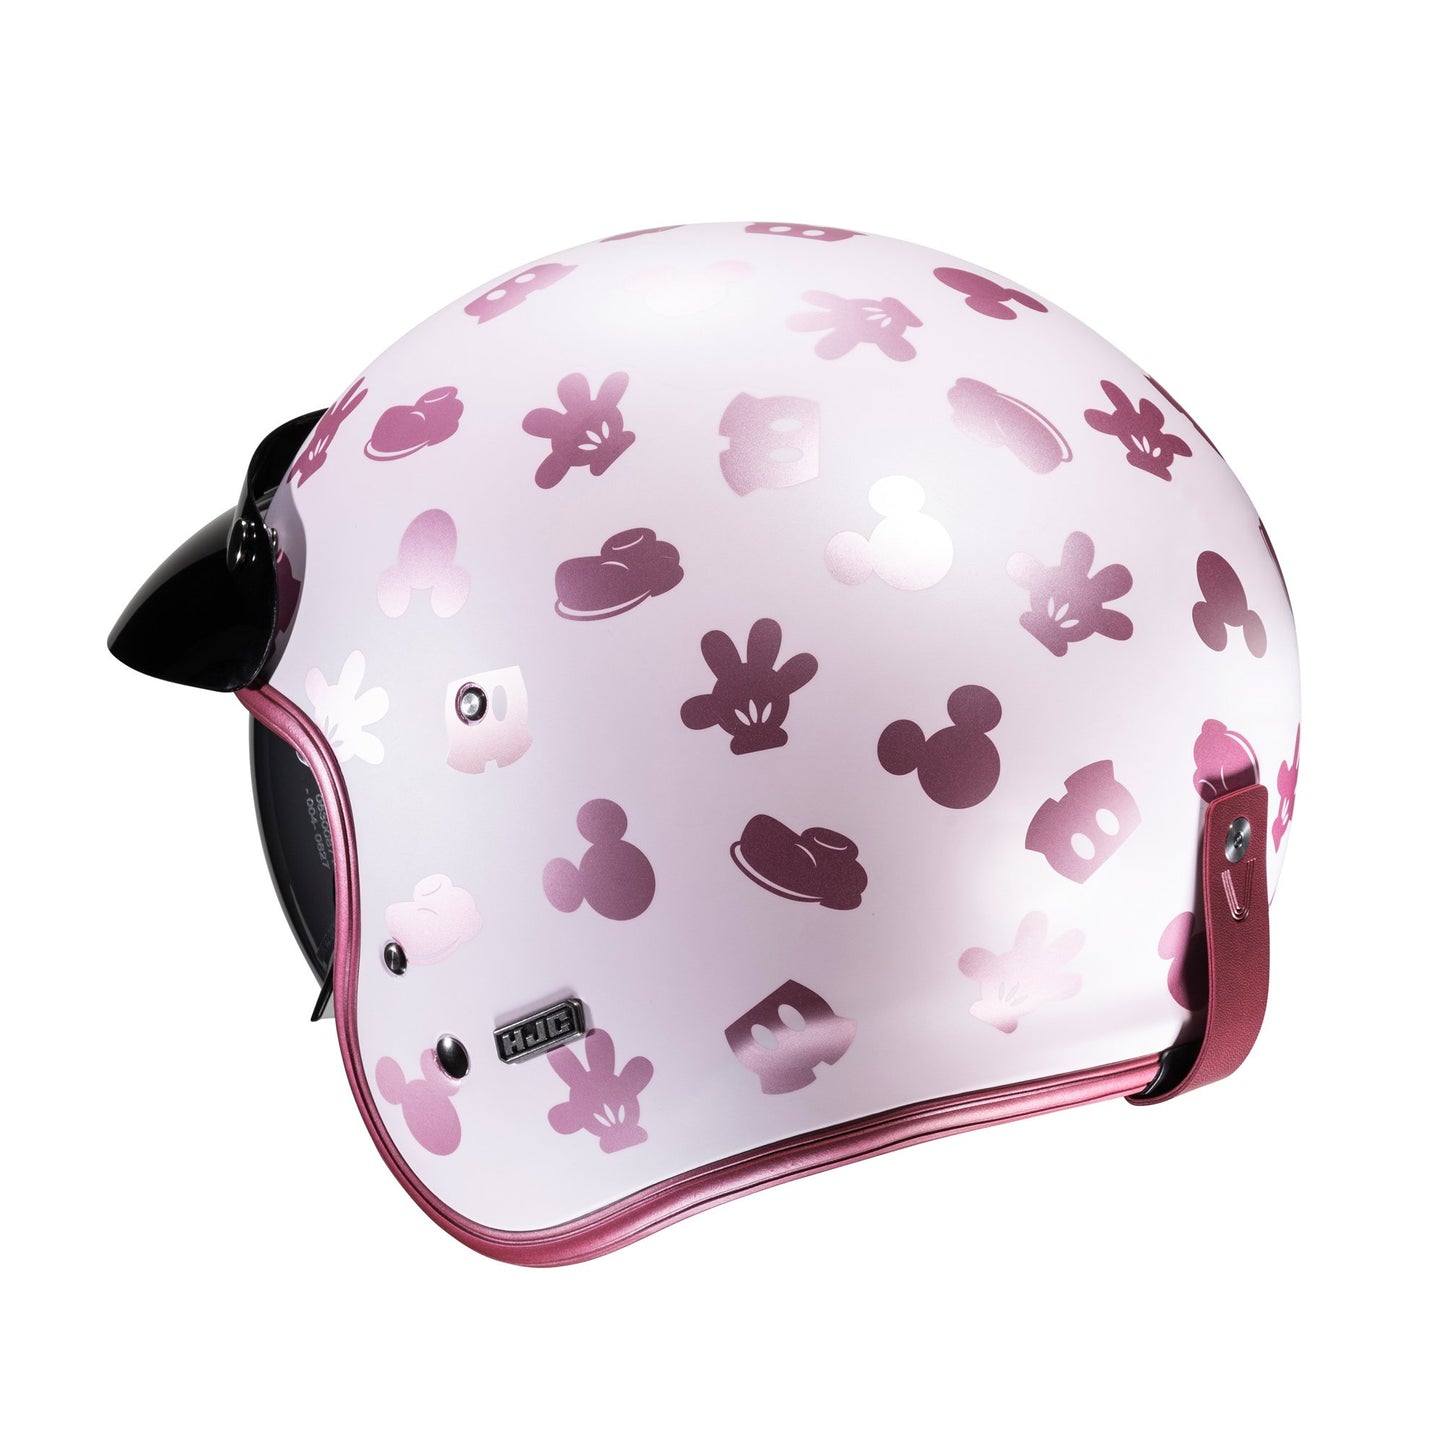 HJC V31 Disney Mickey Motorcycle Open Face Helmet - Pink